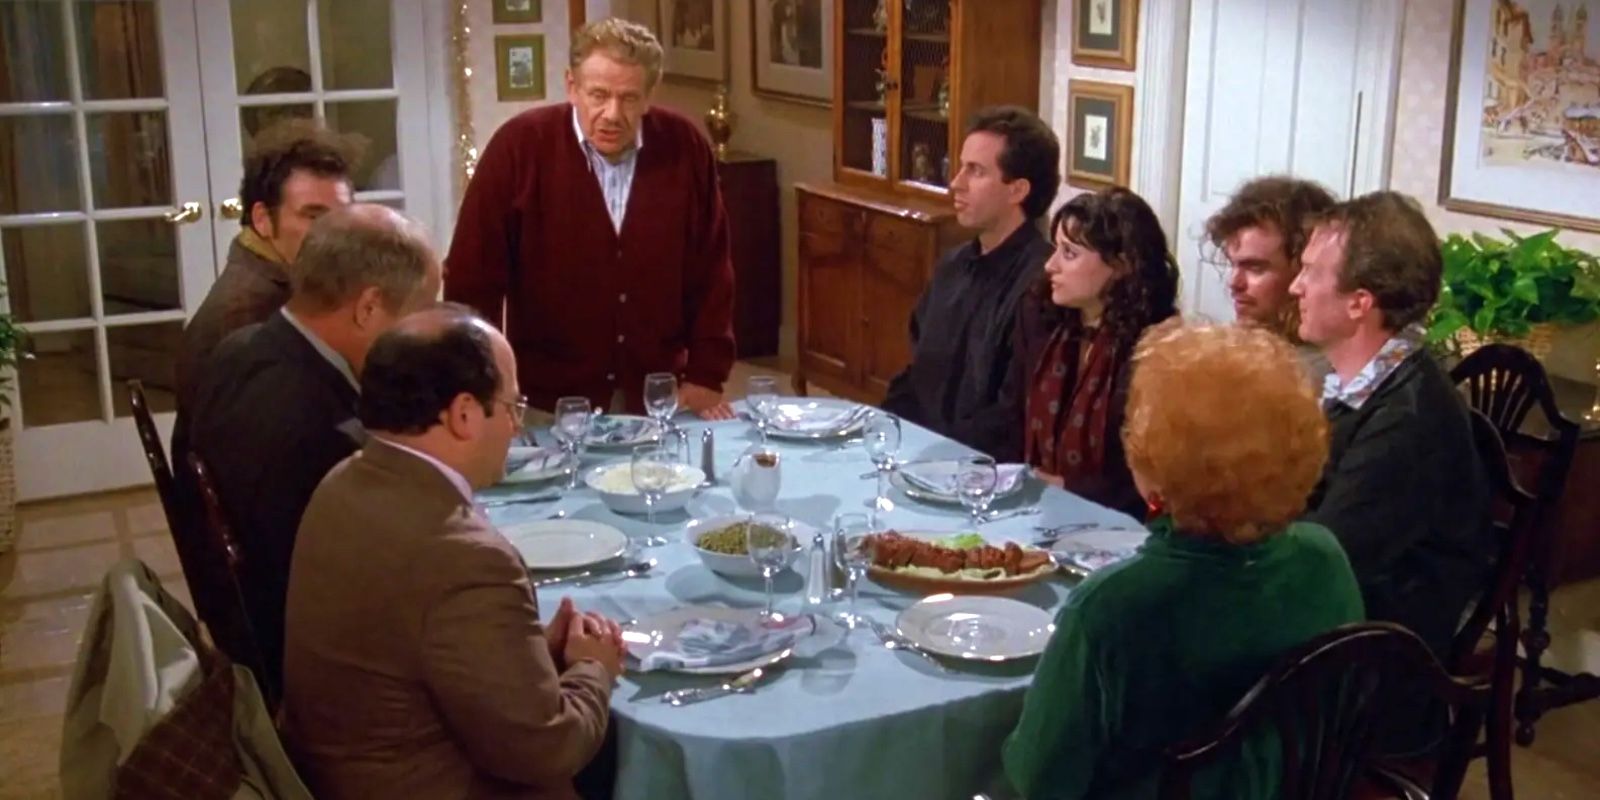 The Festivus dinner on Seinfeld